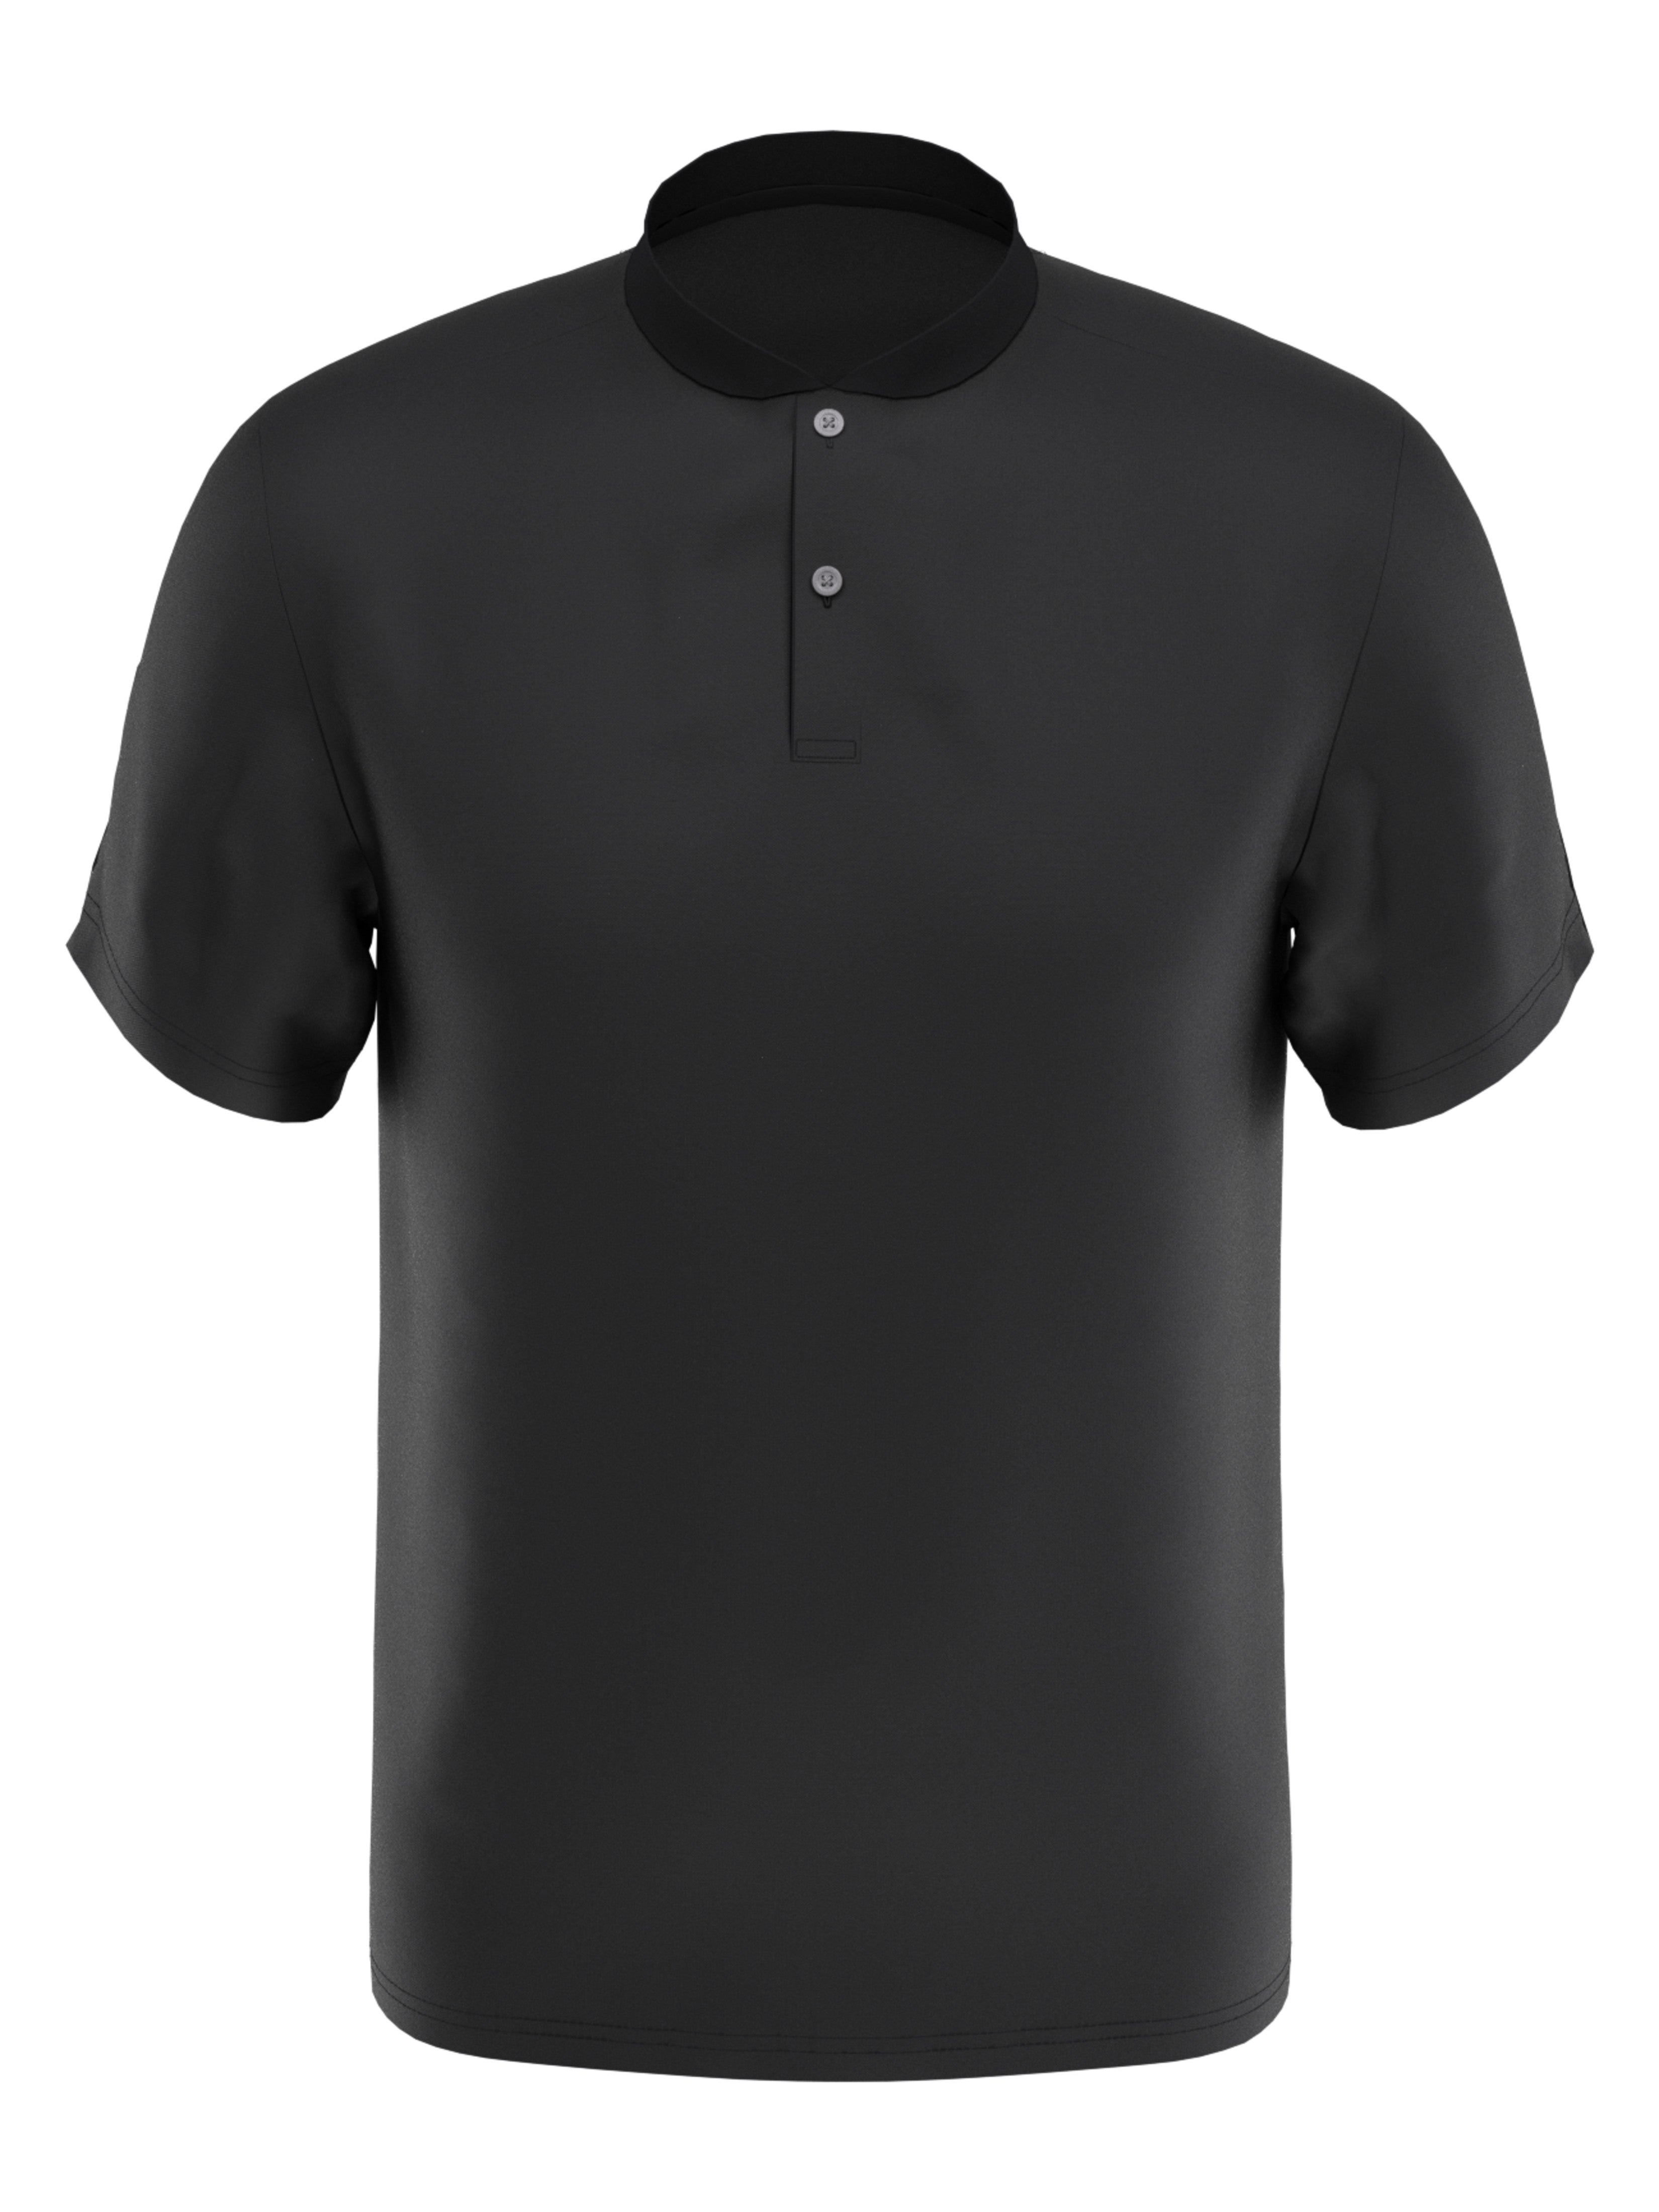 PGA TOUR Apparel Boys Edge Collar Pique Golf Polo Shirt, Size Large, Asphalt Gray, 100% Polyester | Golf Apparel Shop